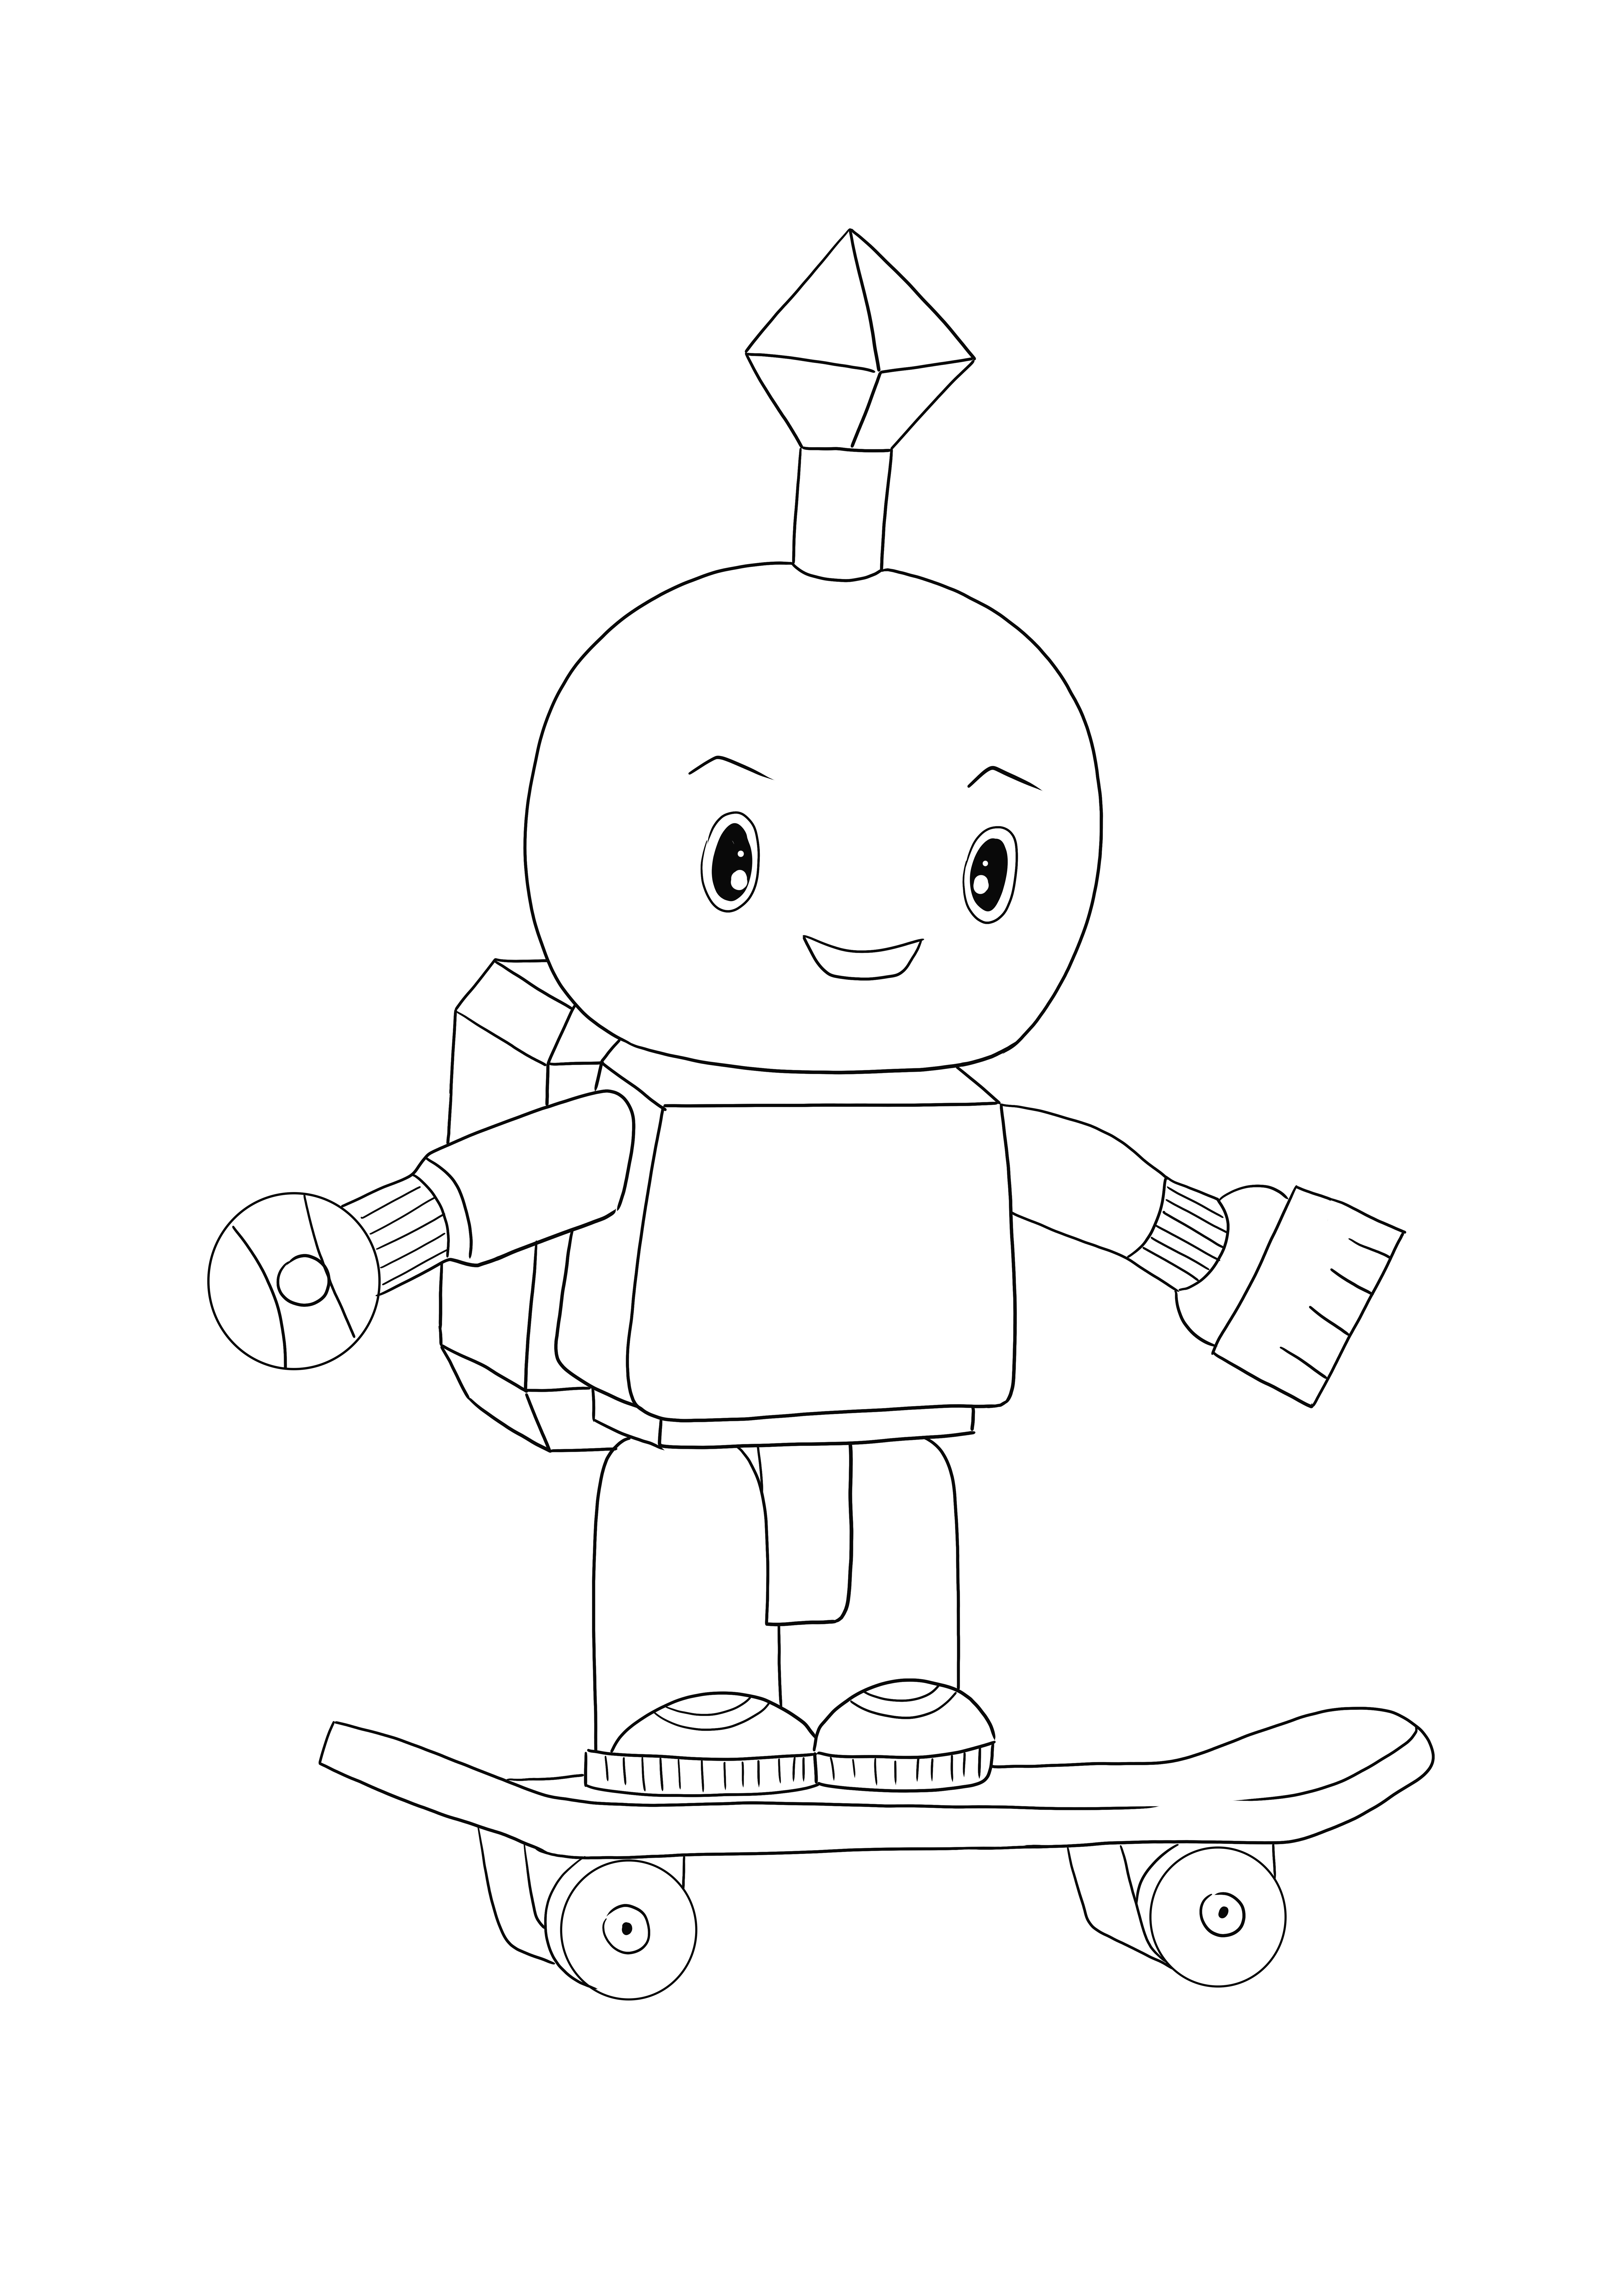 Roblox Robot est gratuit à télécharger et à colorier pour les amateurs de robots